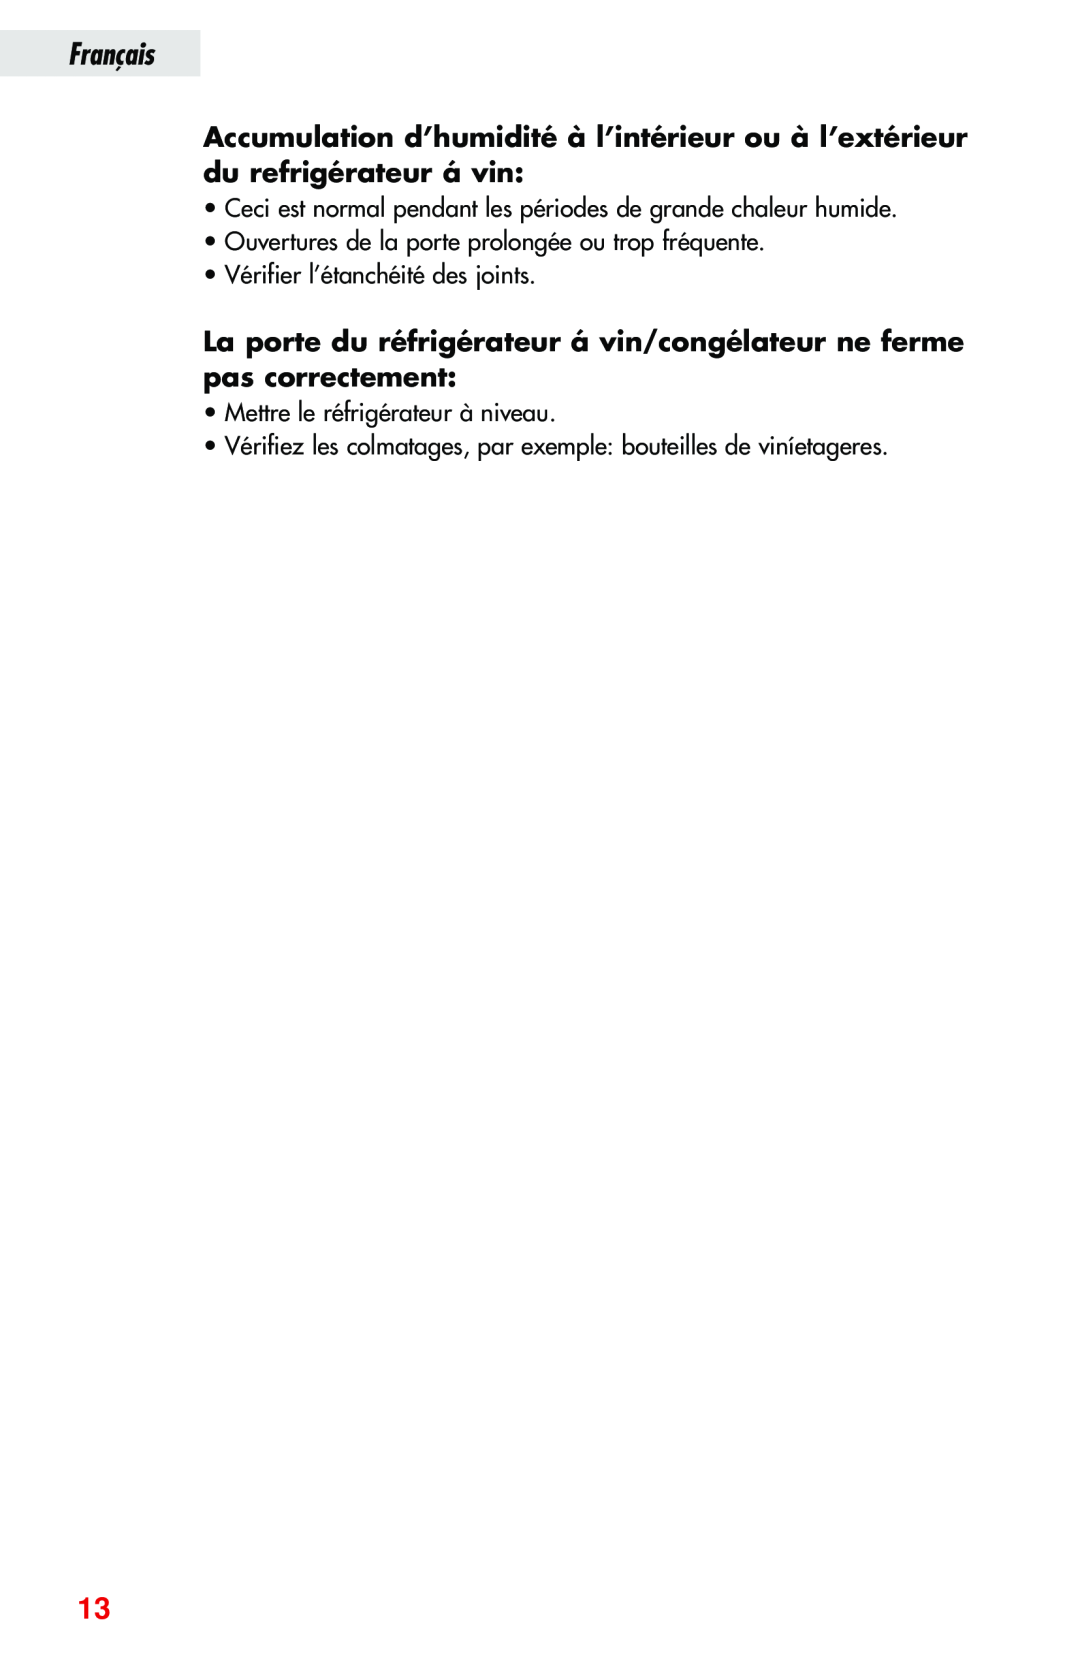 Haier JC-82GB manual La porte du réfrigérateur á vin/congélateur ne ferme pas correctement, Français 